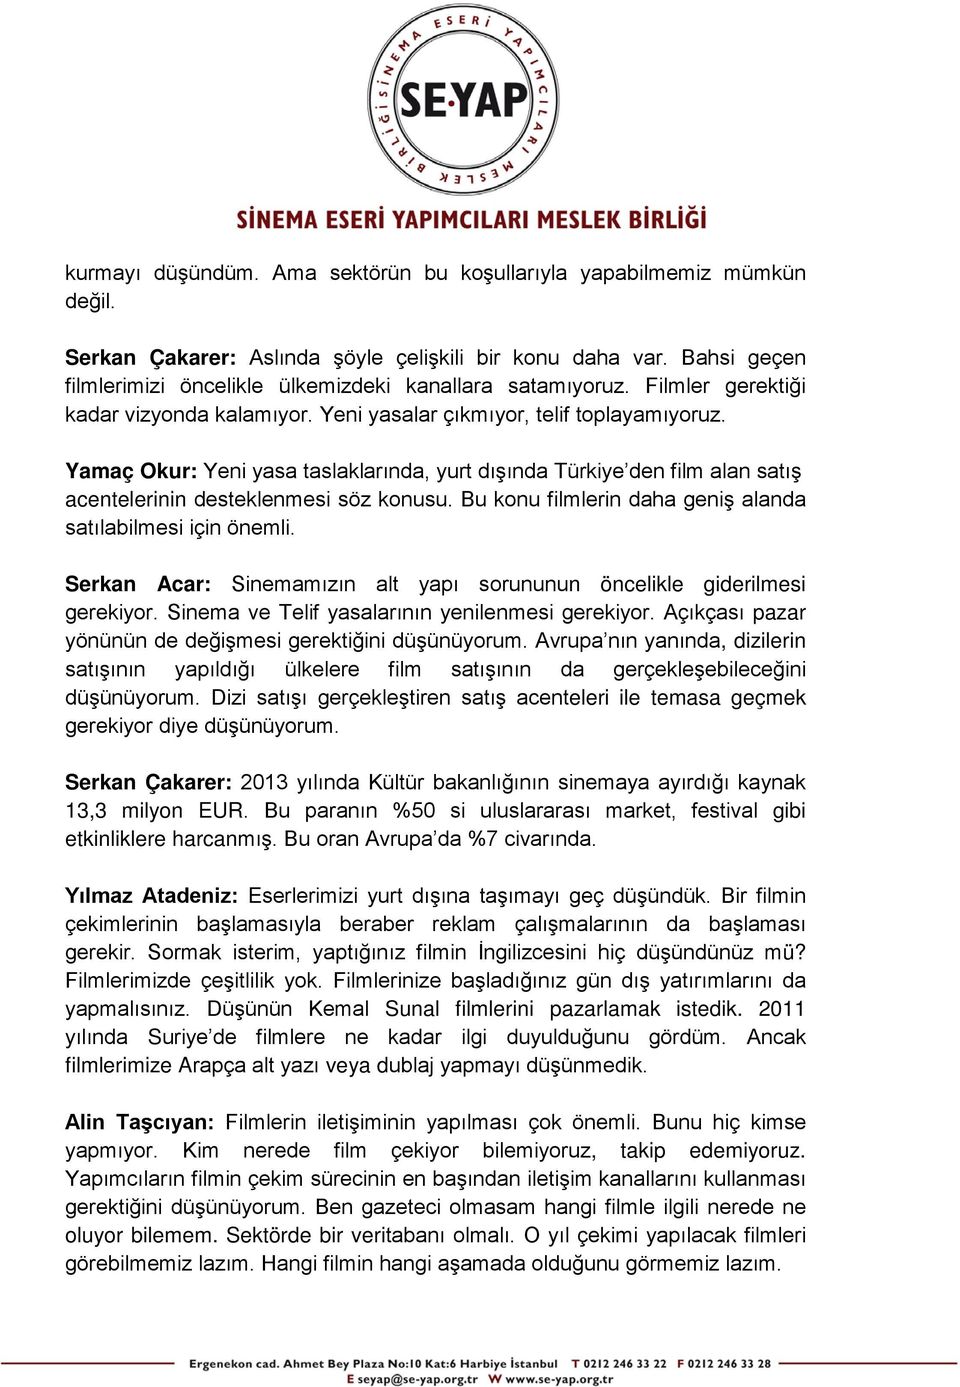 Yamaç Okur: Yeni yasa taslaklarında, yurt dışında Türkiye den film alan satış acentelerinin desteklenmesi söz konusu. Bu konu filmlerin daha geniş alanda satılabilmesi için önemli.